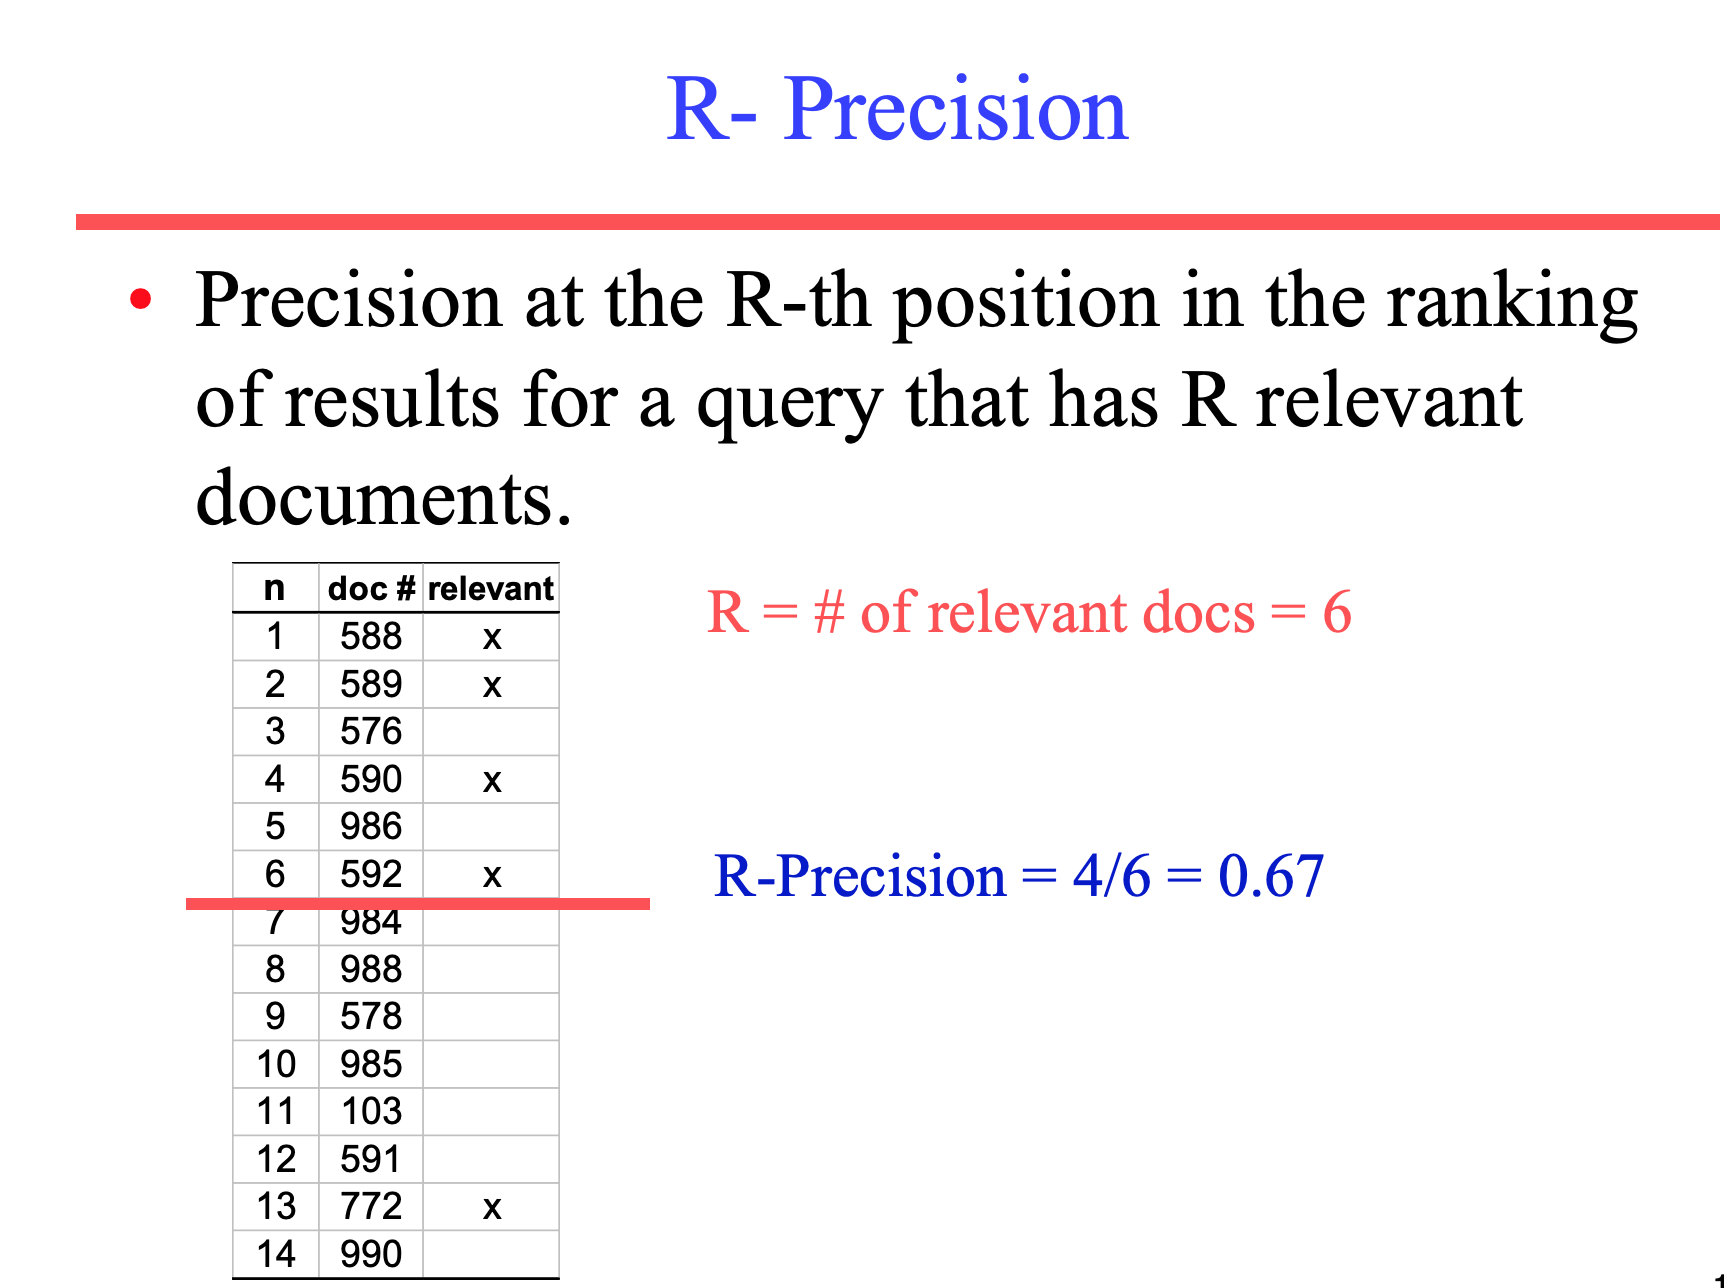 R-precision